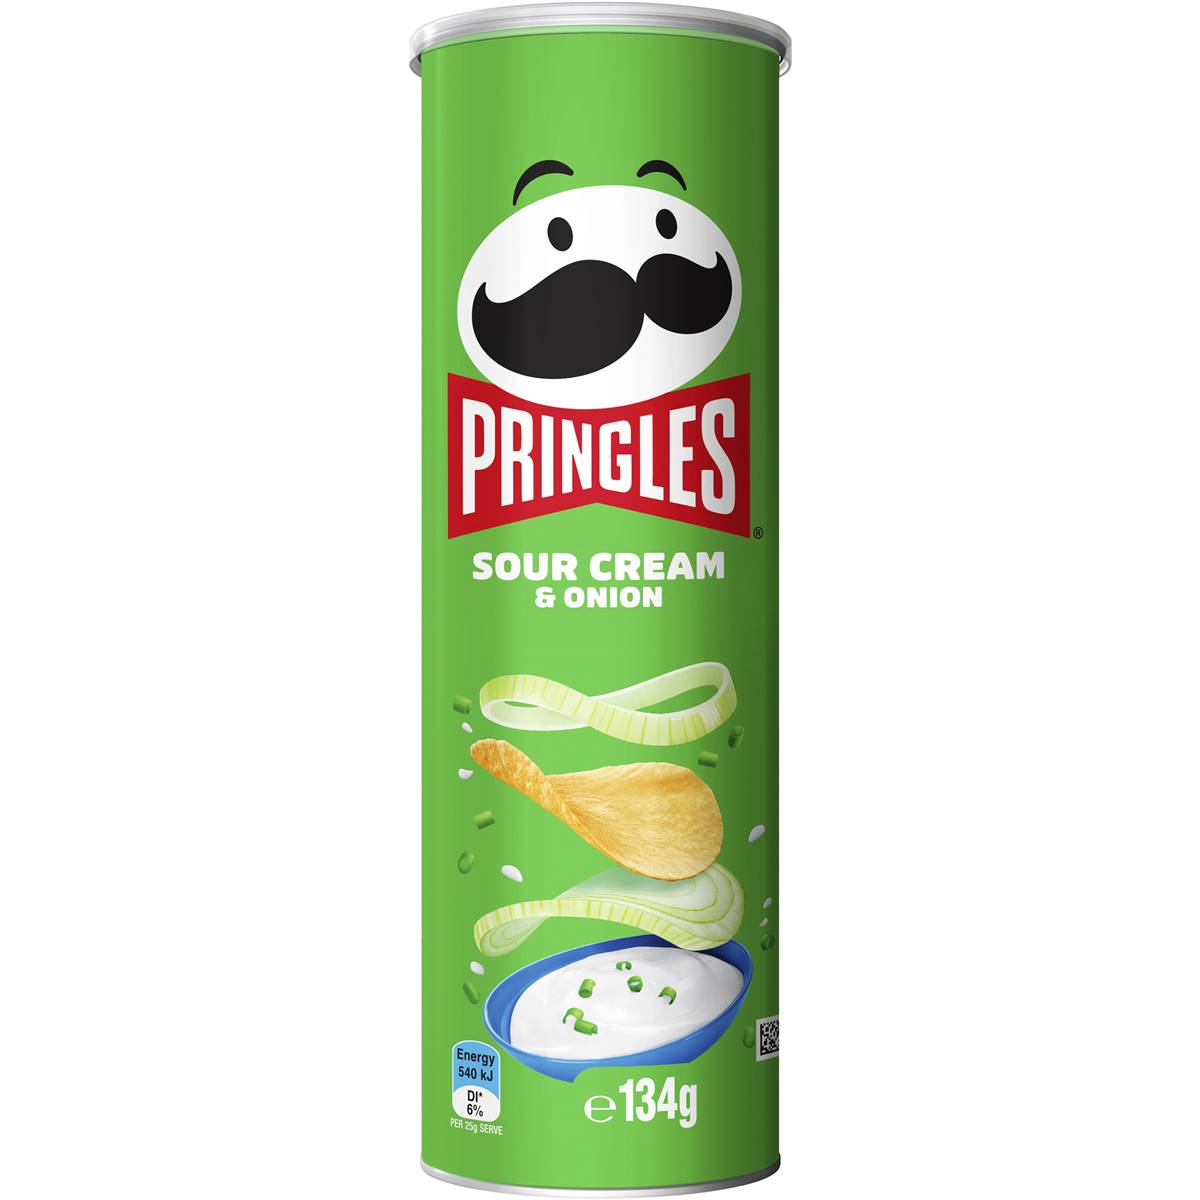 Pringles Sour Cream & Onion - Homecare24